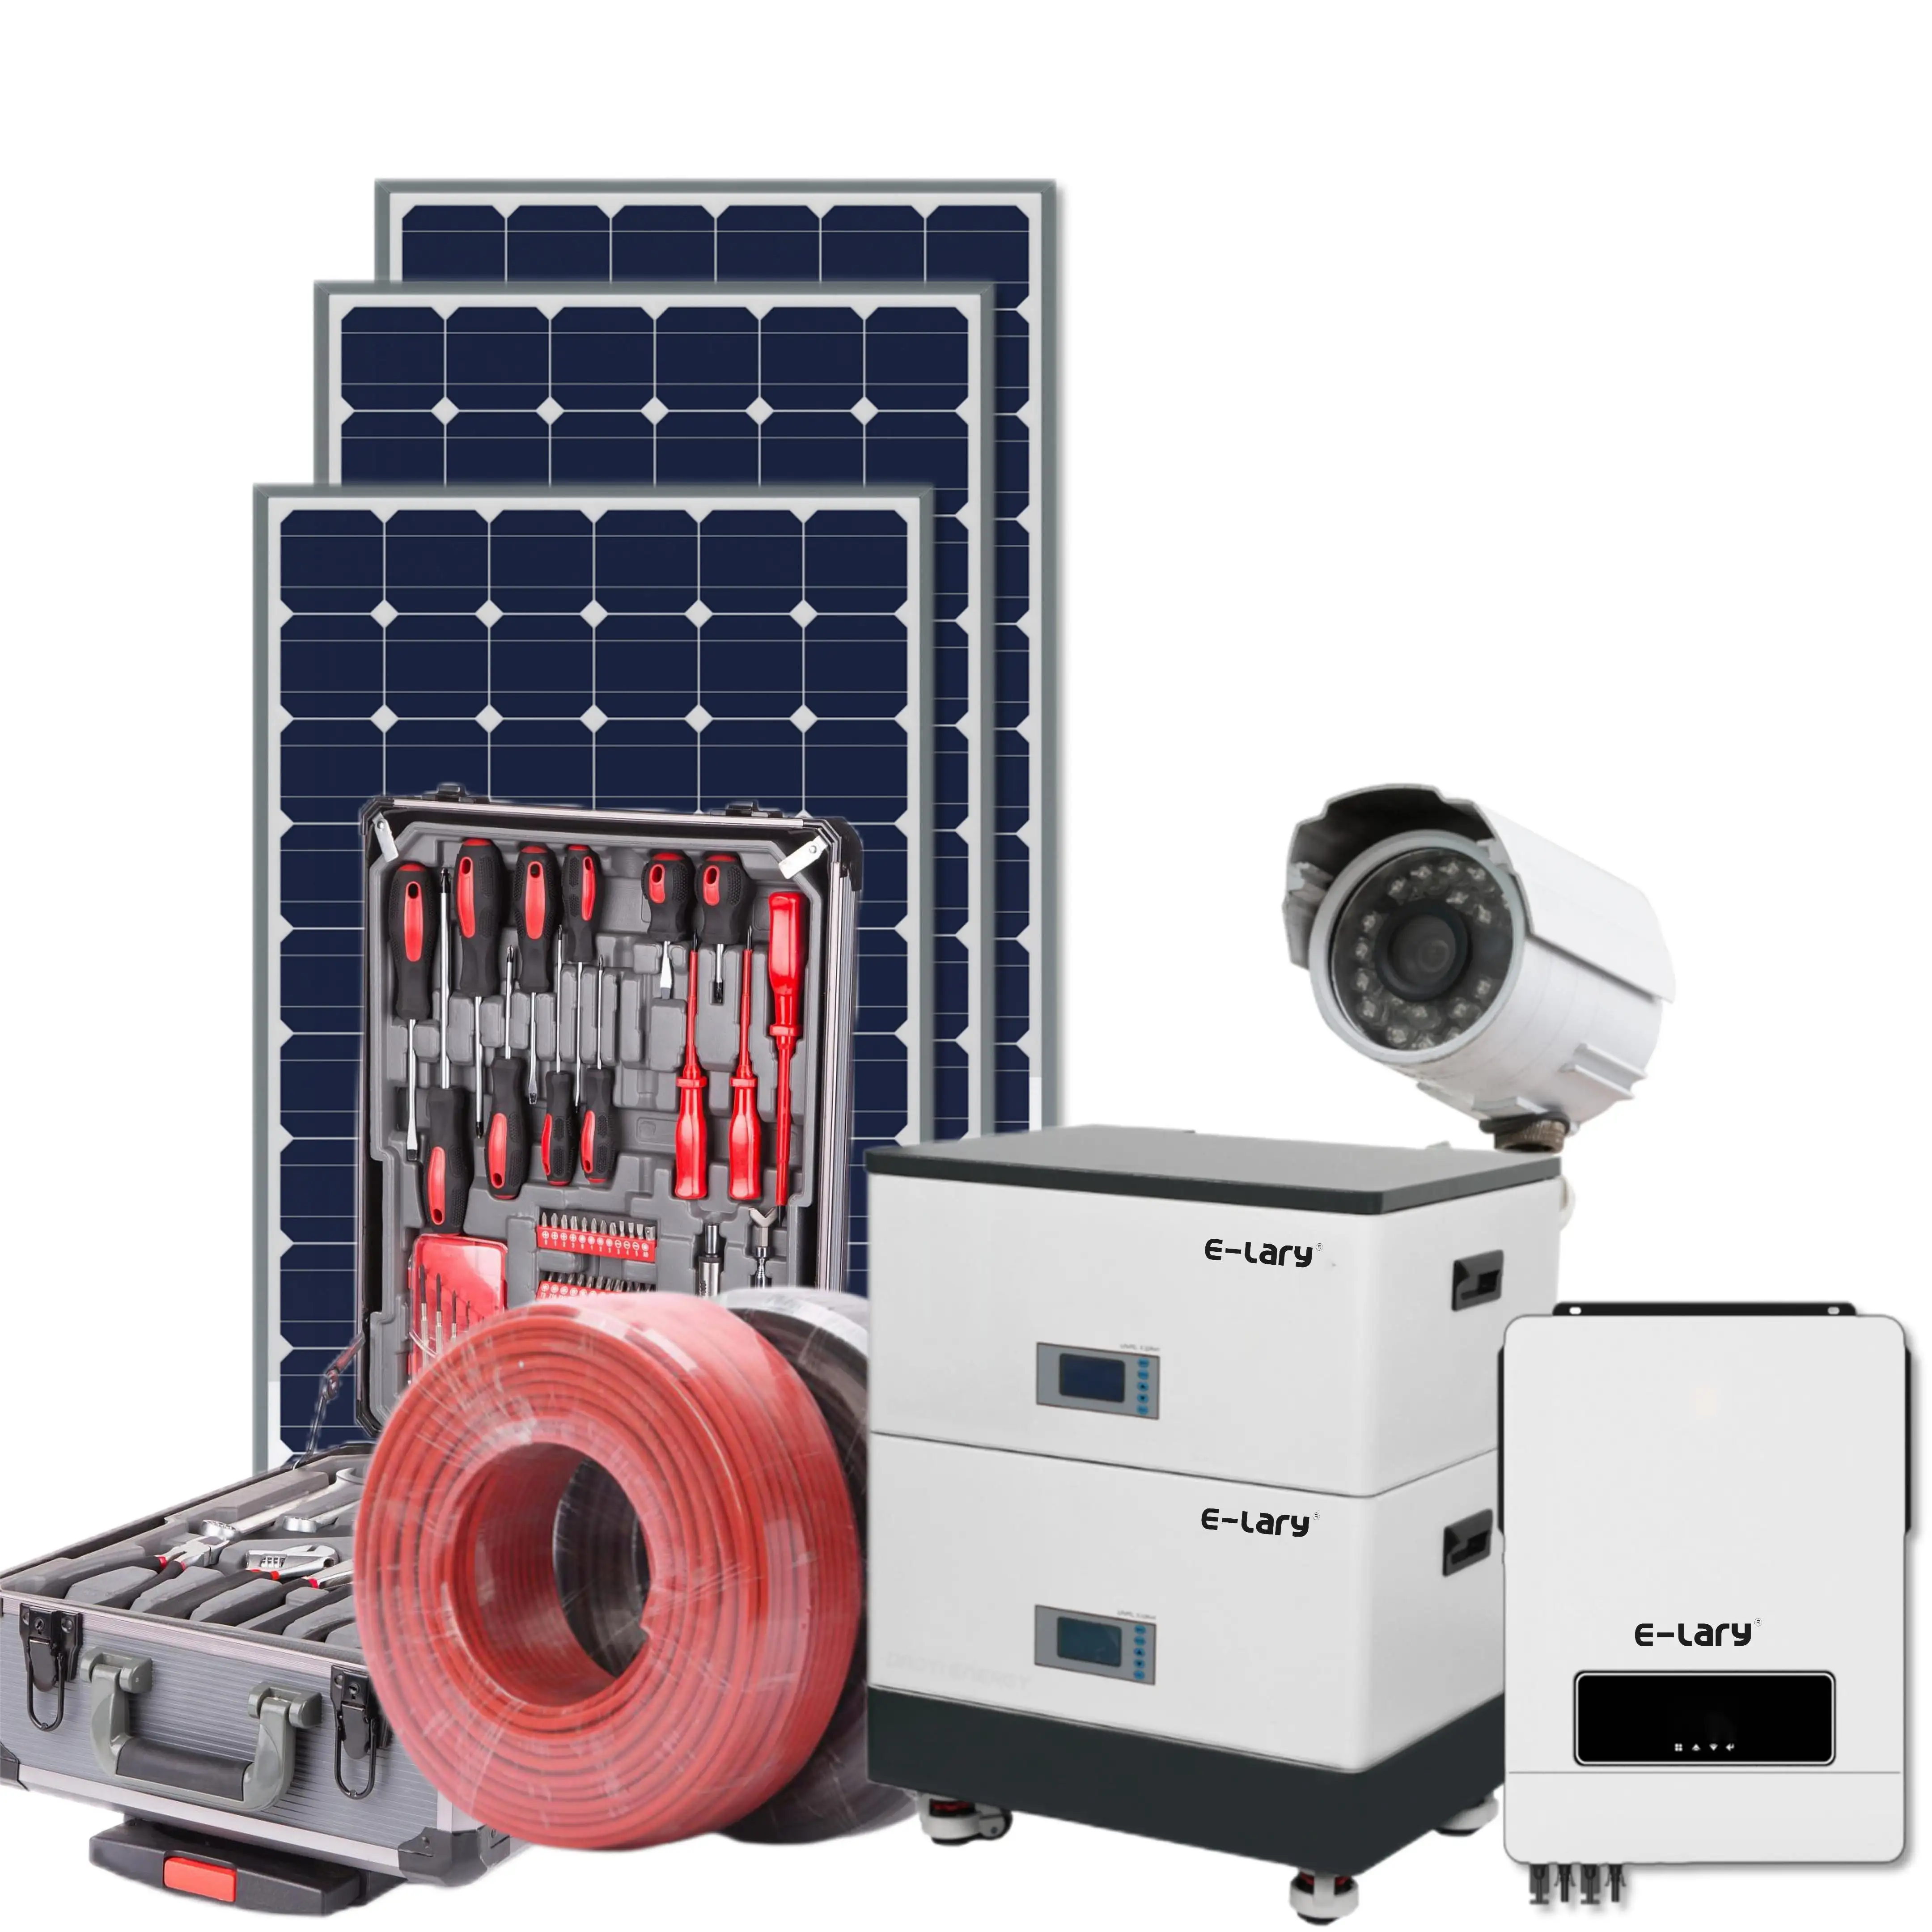 El sistema solar de batería de litio para el hogar comprende paquetes de baterías de pila de energía personalizados diseñados para ofrecer una solución de respaldo de batería para el hogar